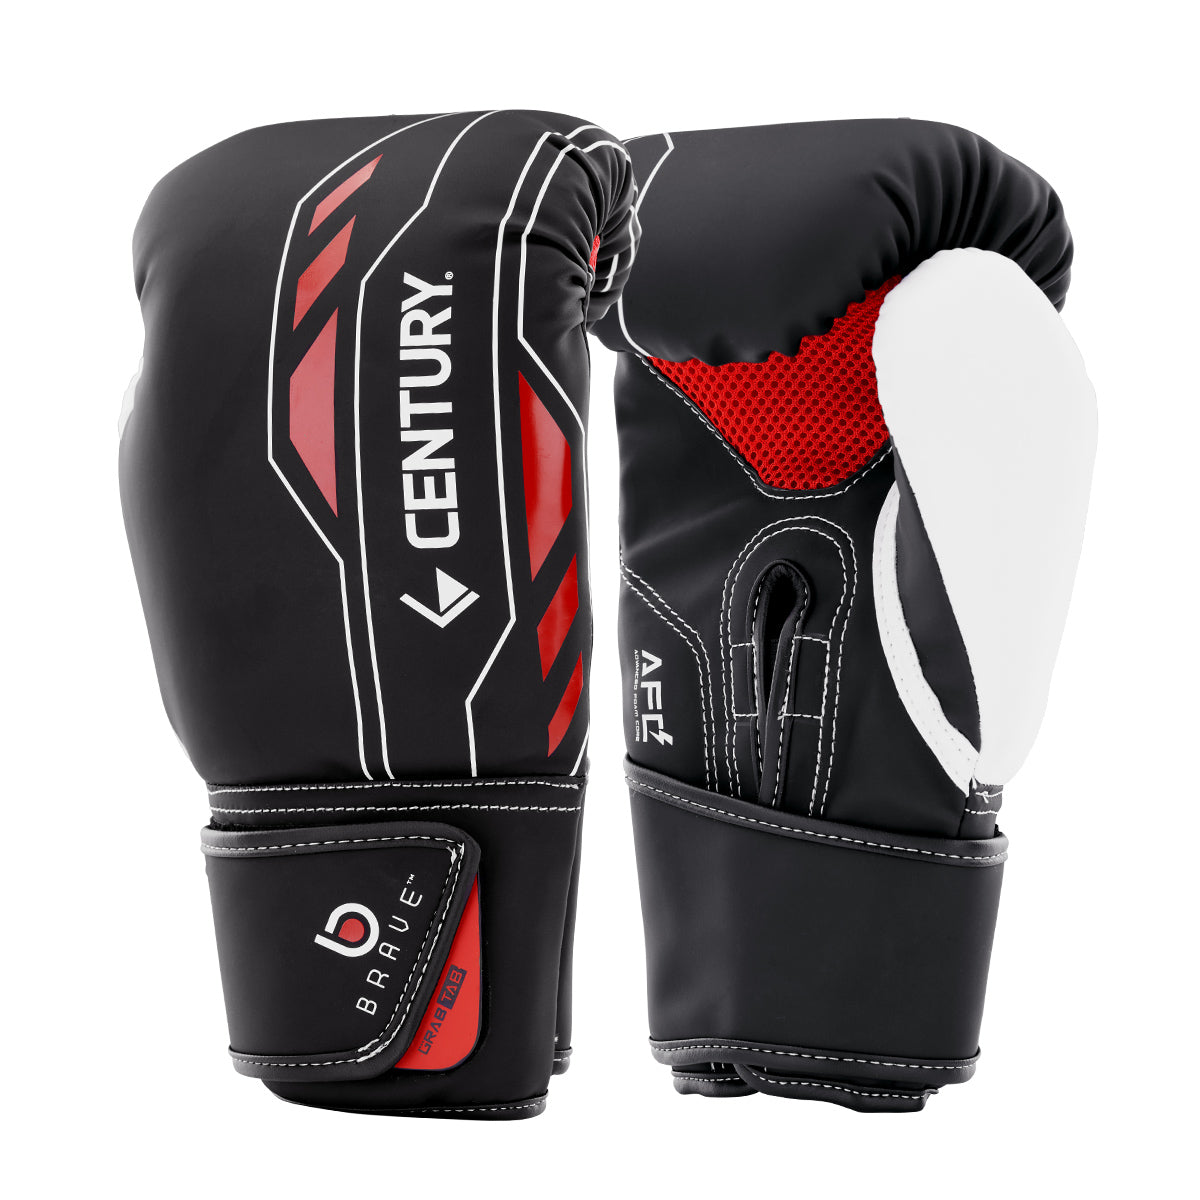 Brave Kickboxing Glove 12 Oz Black White Red